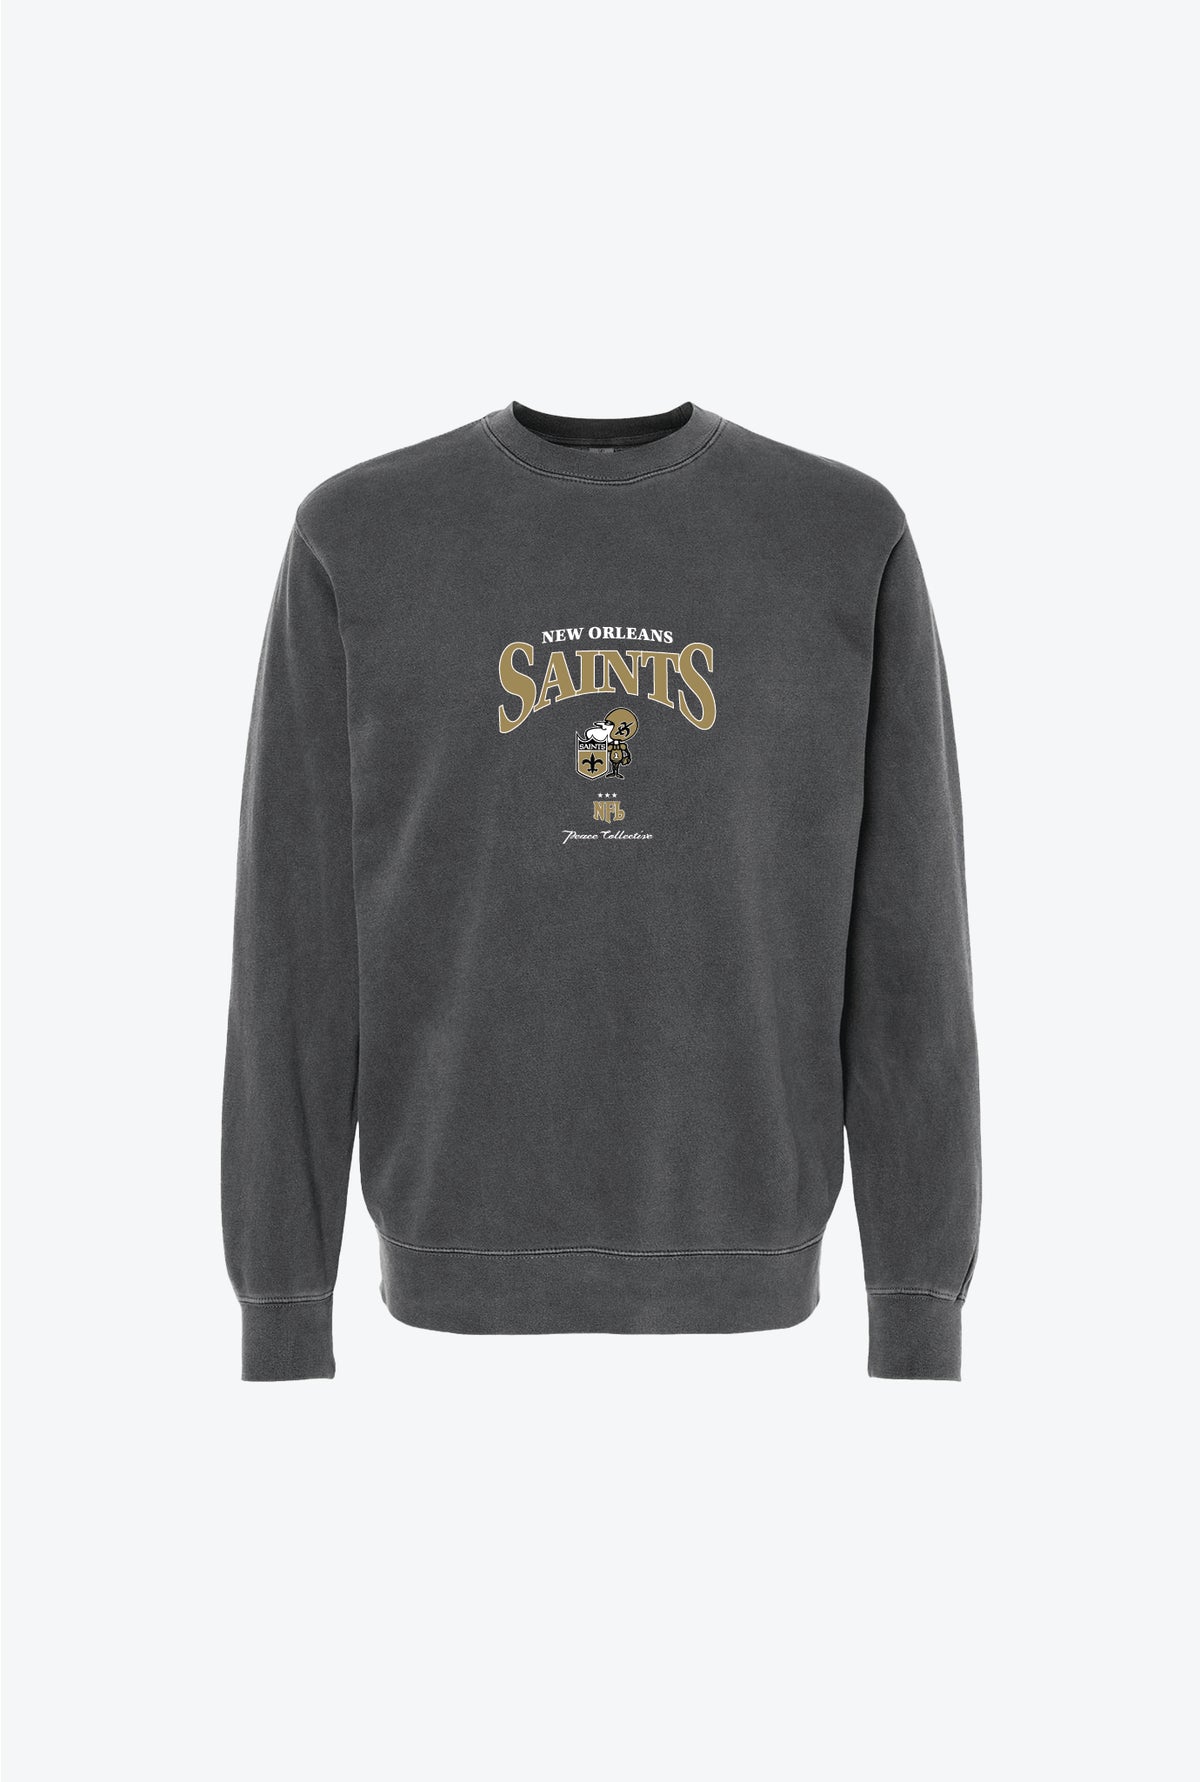 New Orleans Saints Vintage Crewneck - Black